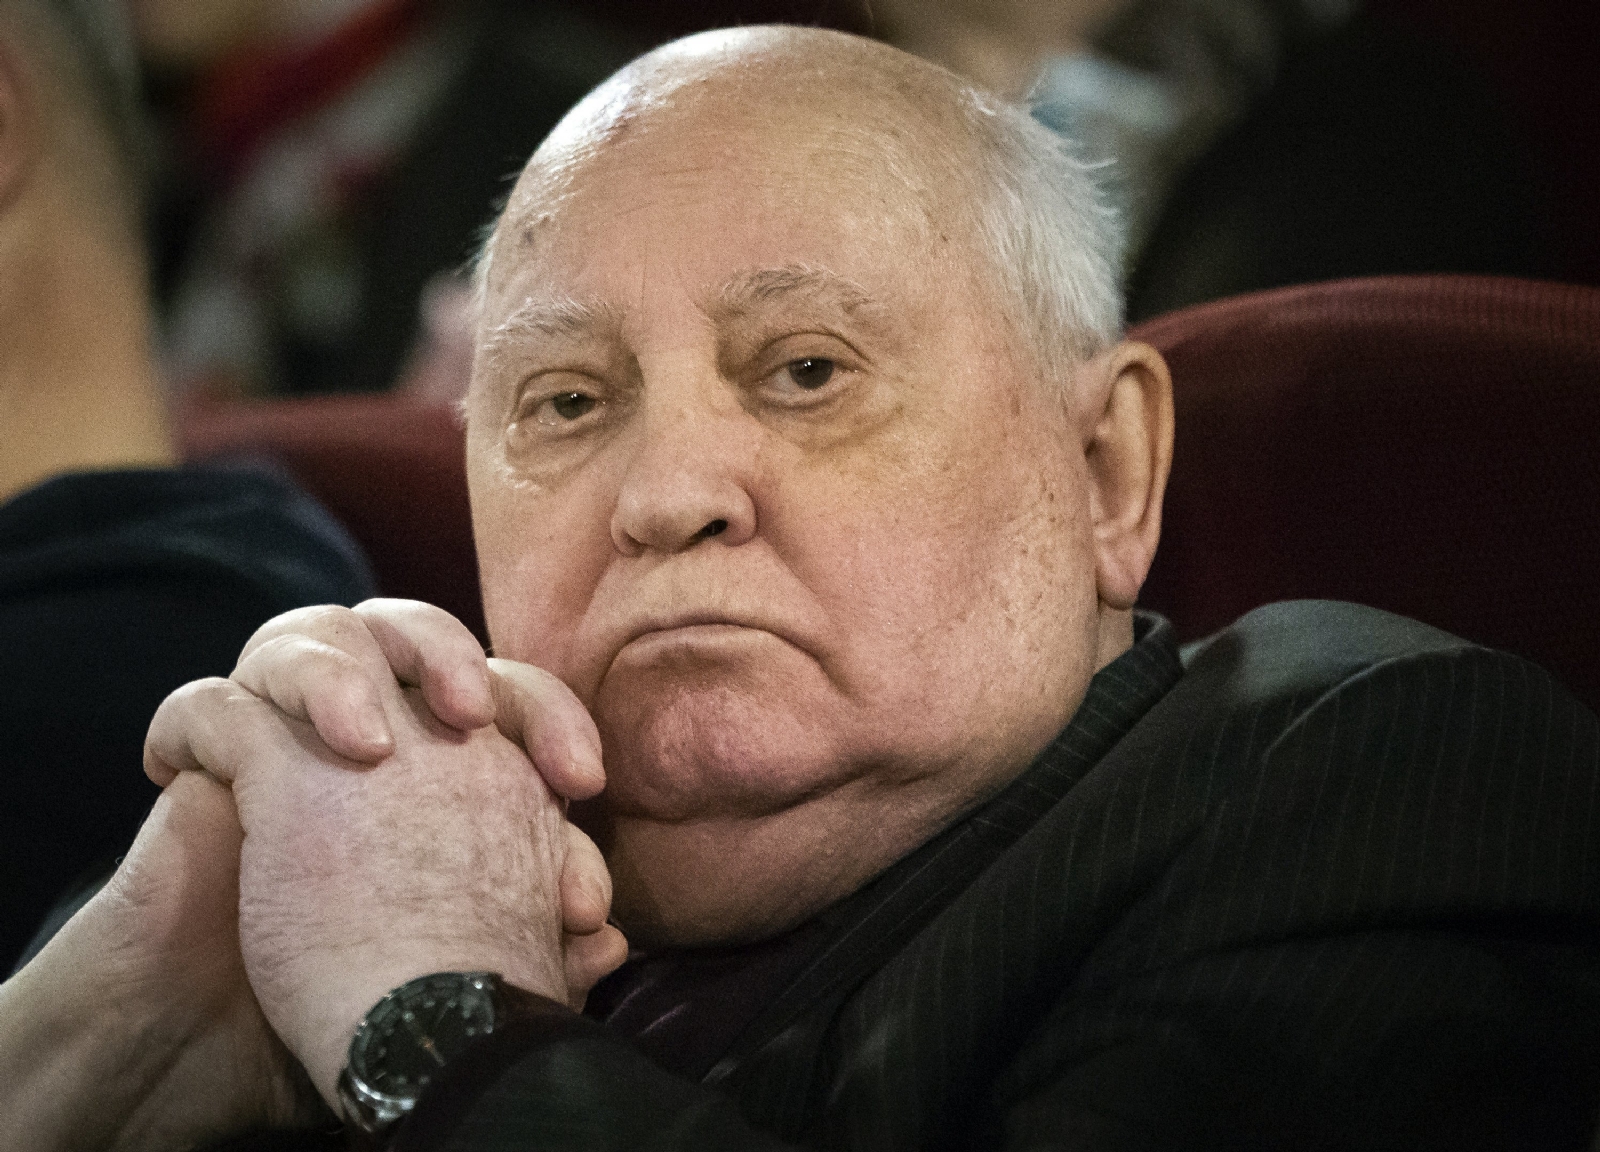 Mijaíl Gorbachov será enterrado en el cementerio Novodévichi de Moscú, según lo anunciado por su hija Irina Gorbachov